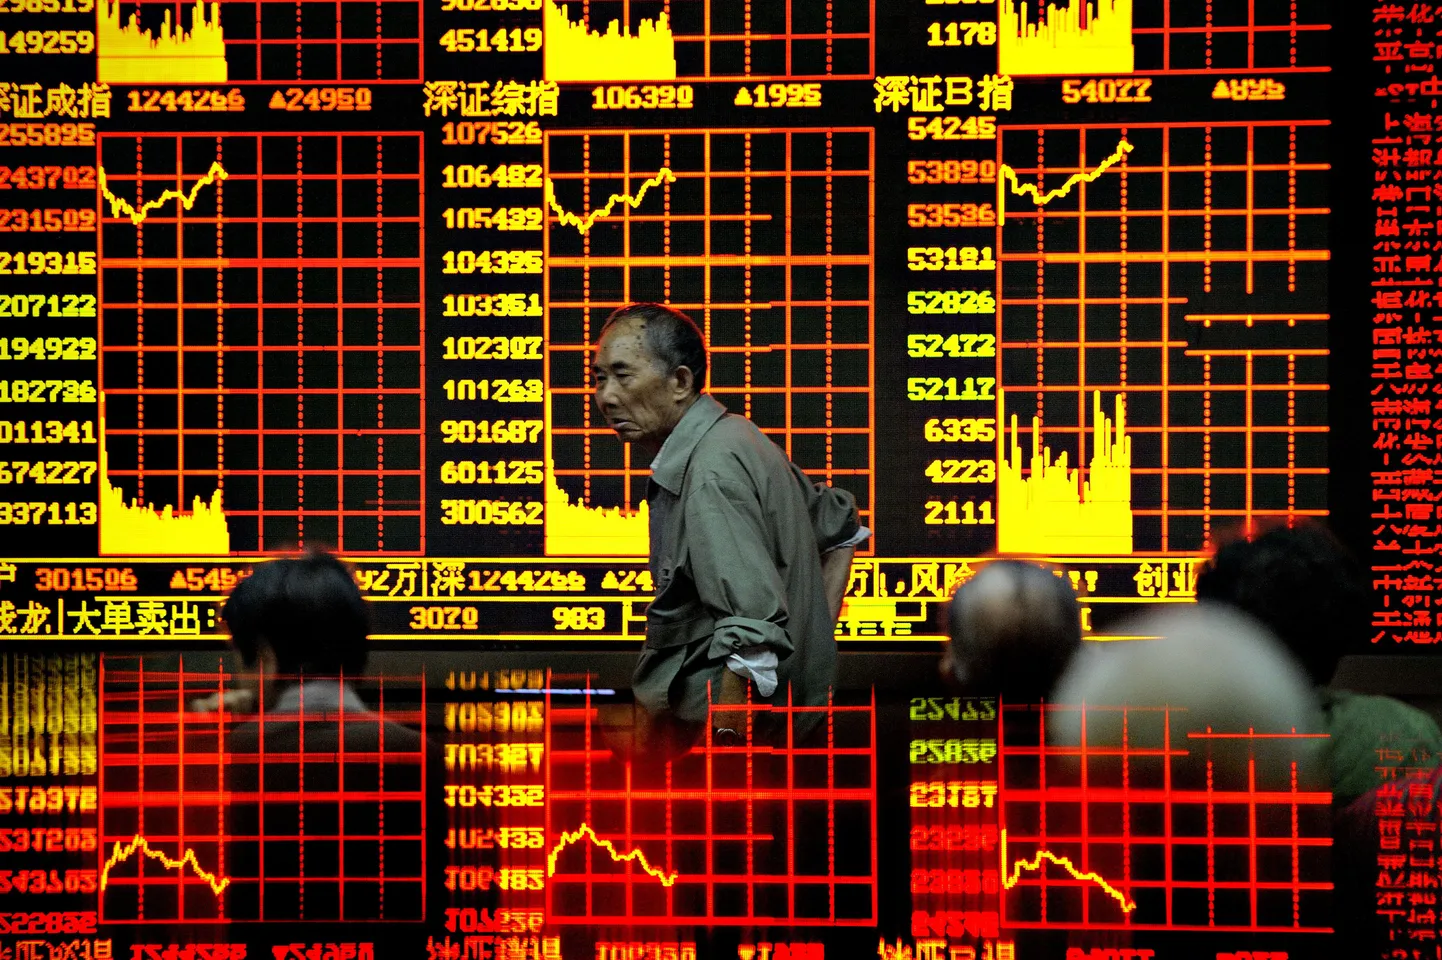 Investor Shanghai börsil kaubeldavate aktsiate hinnatabloo eest mööödumas.